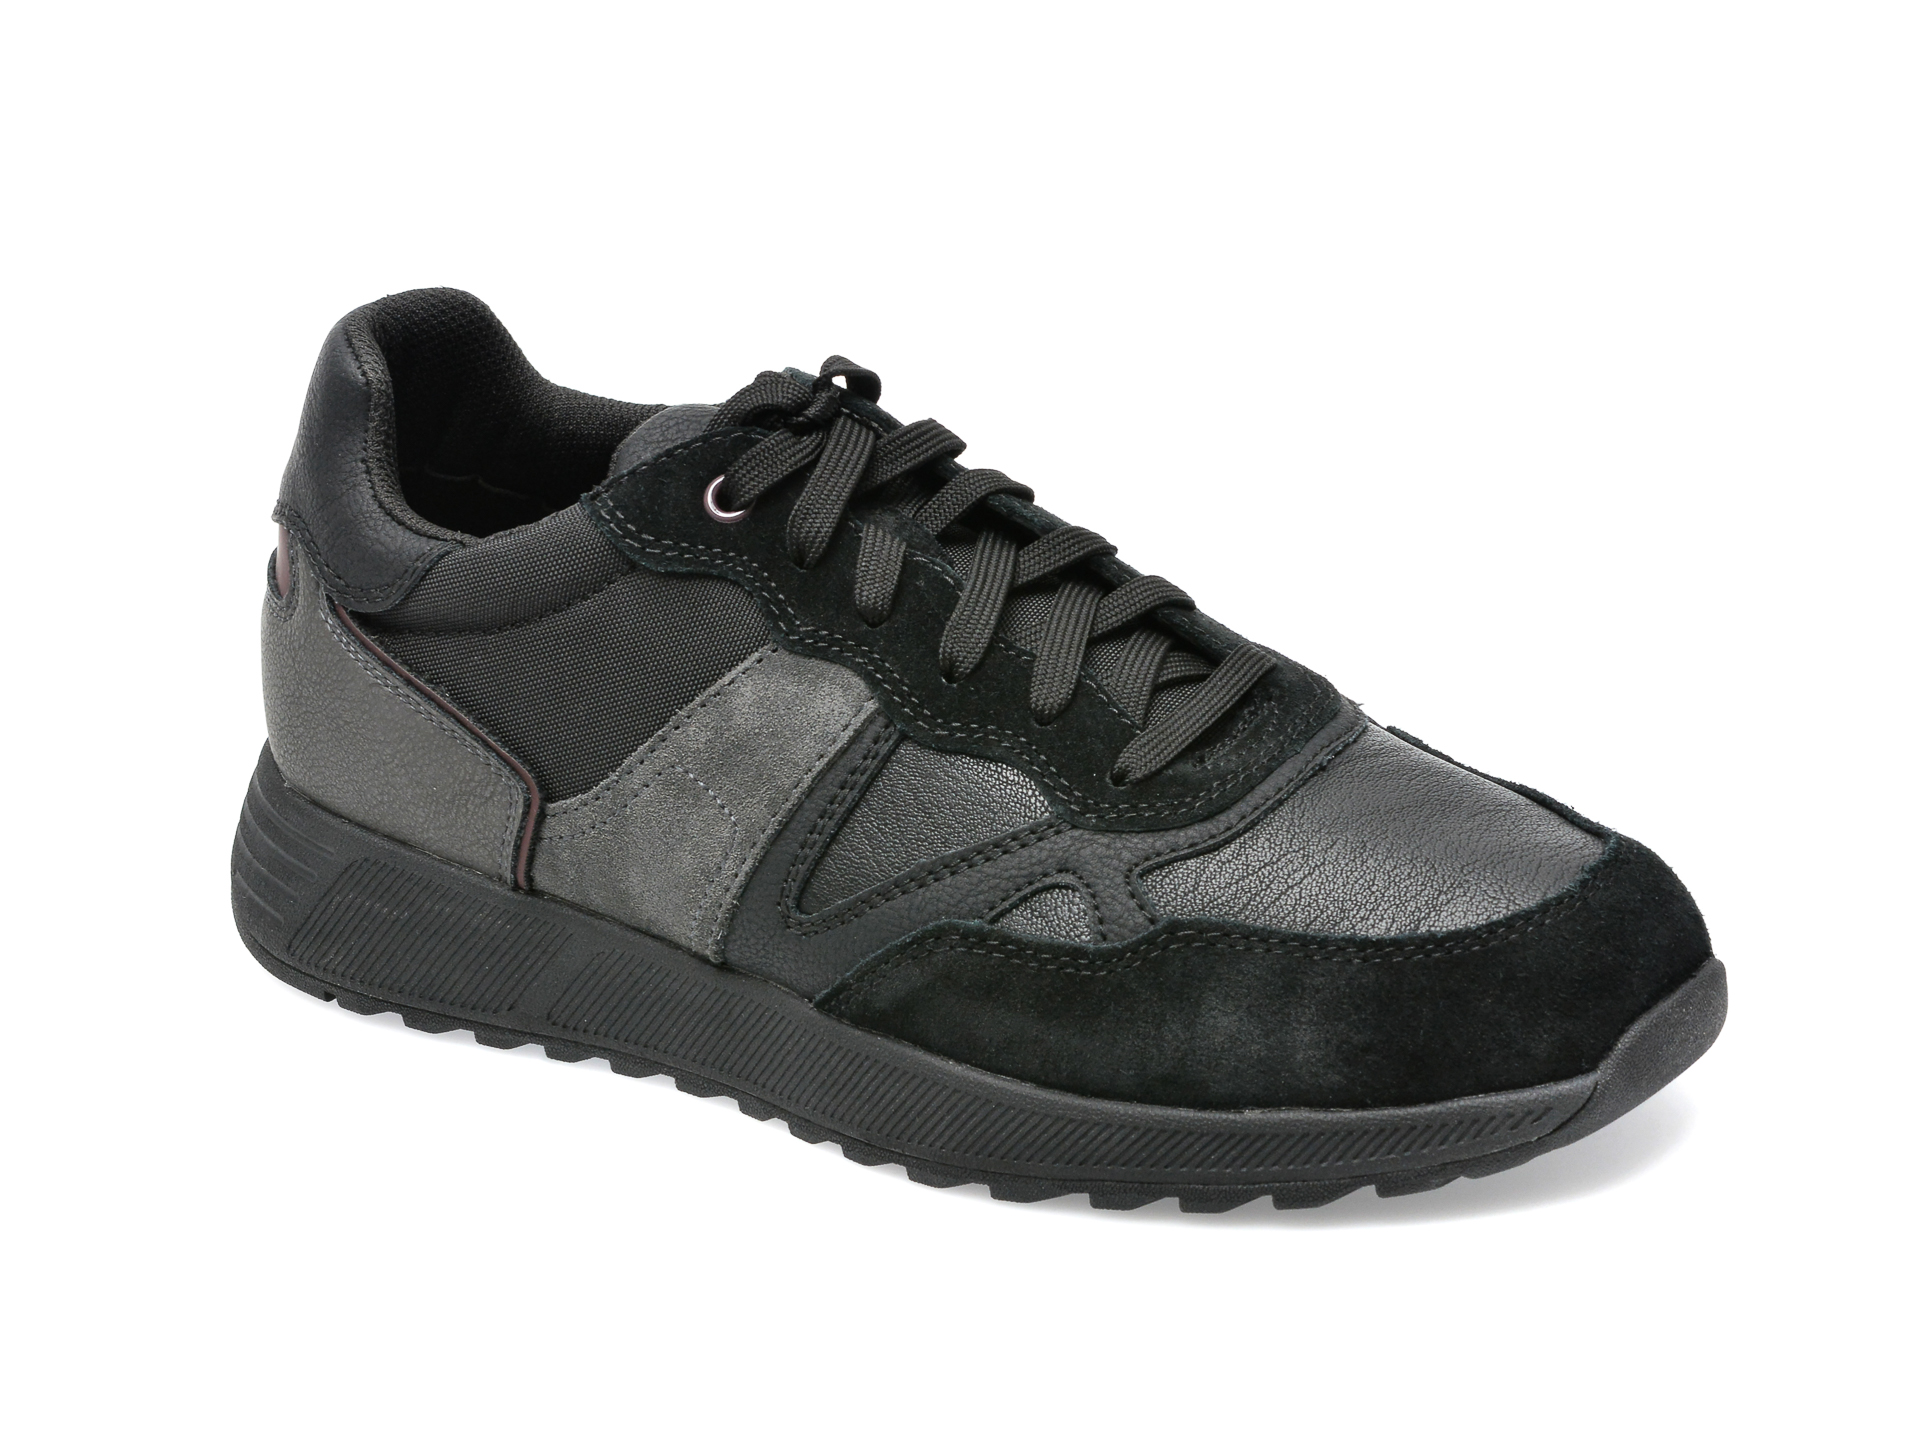 Pantofi sport GEOX negri, U26F1A, din piele naturala barbati 2023-03-19